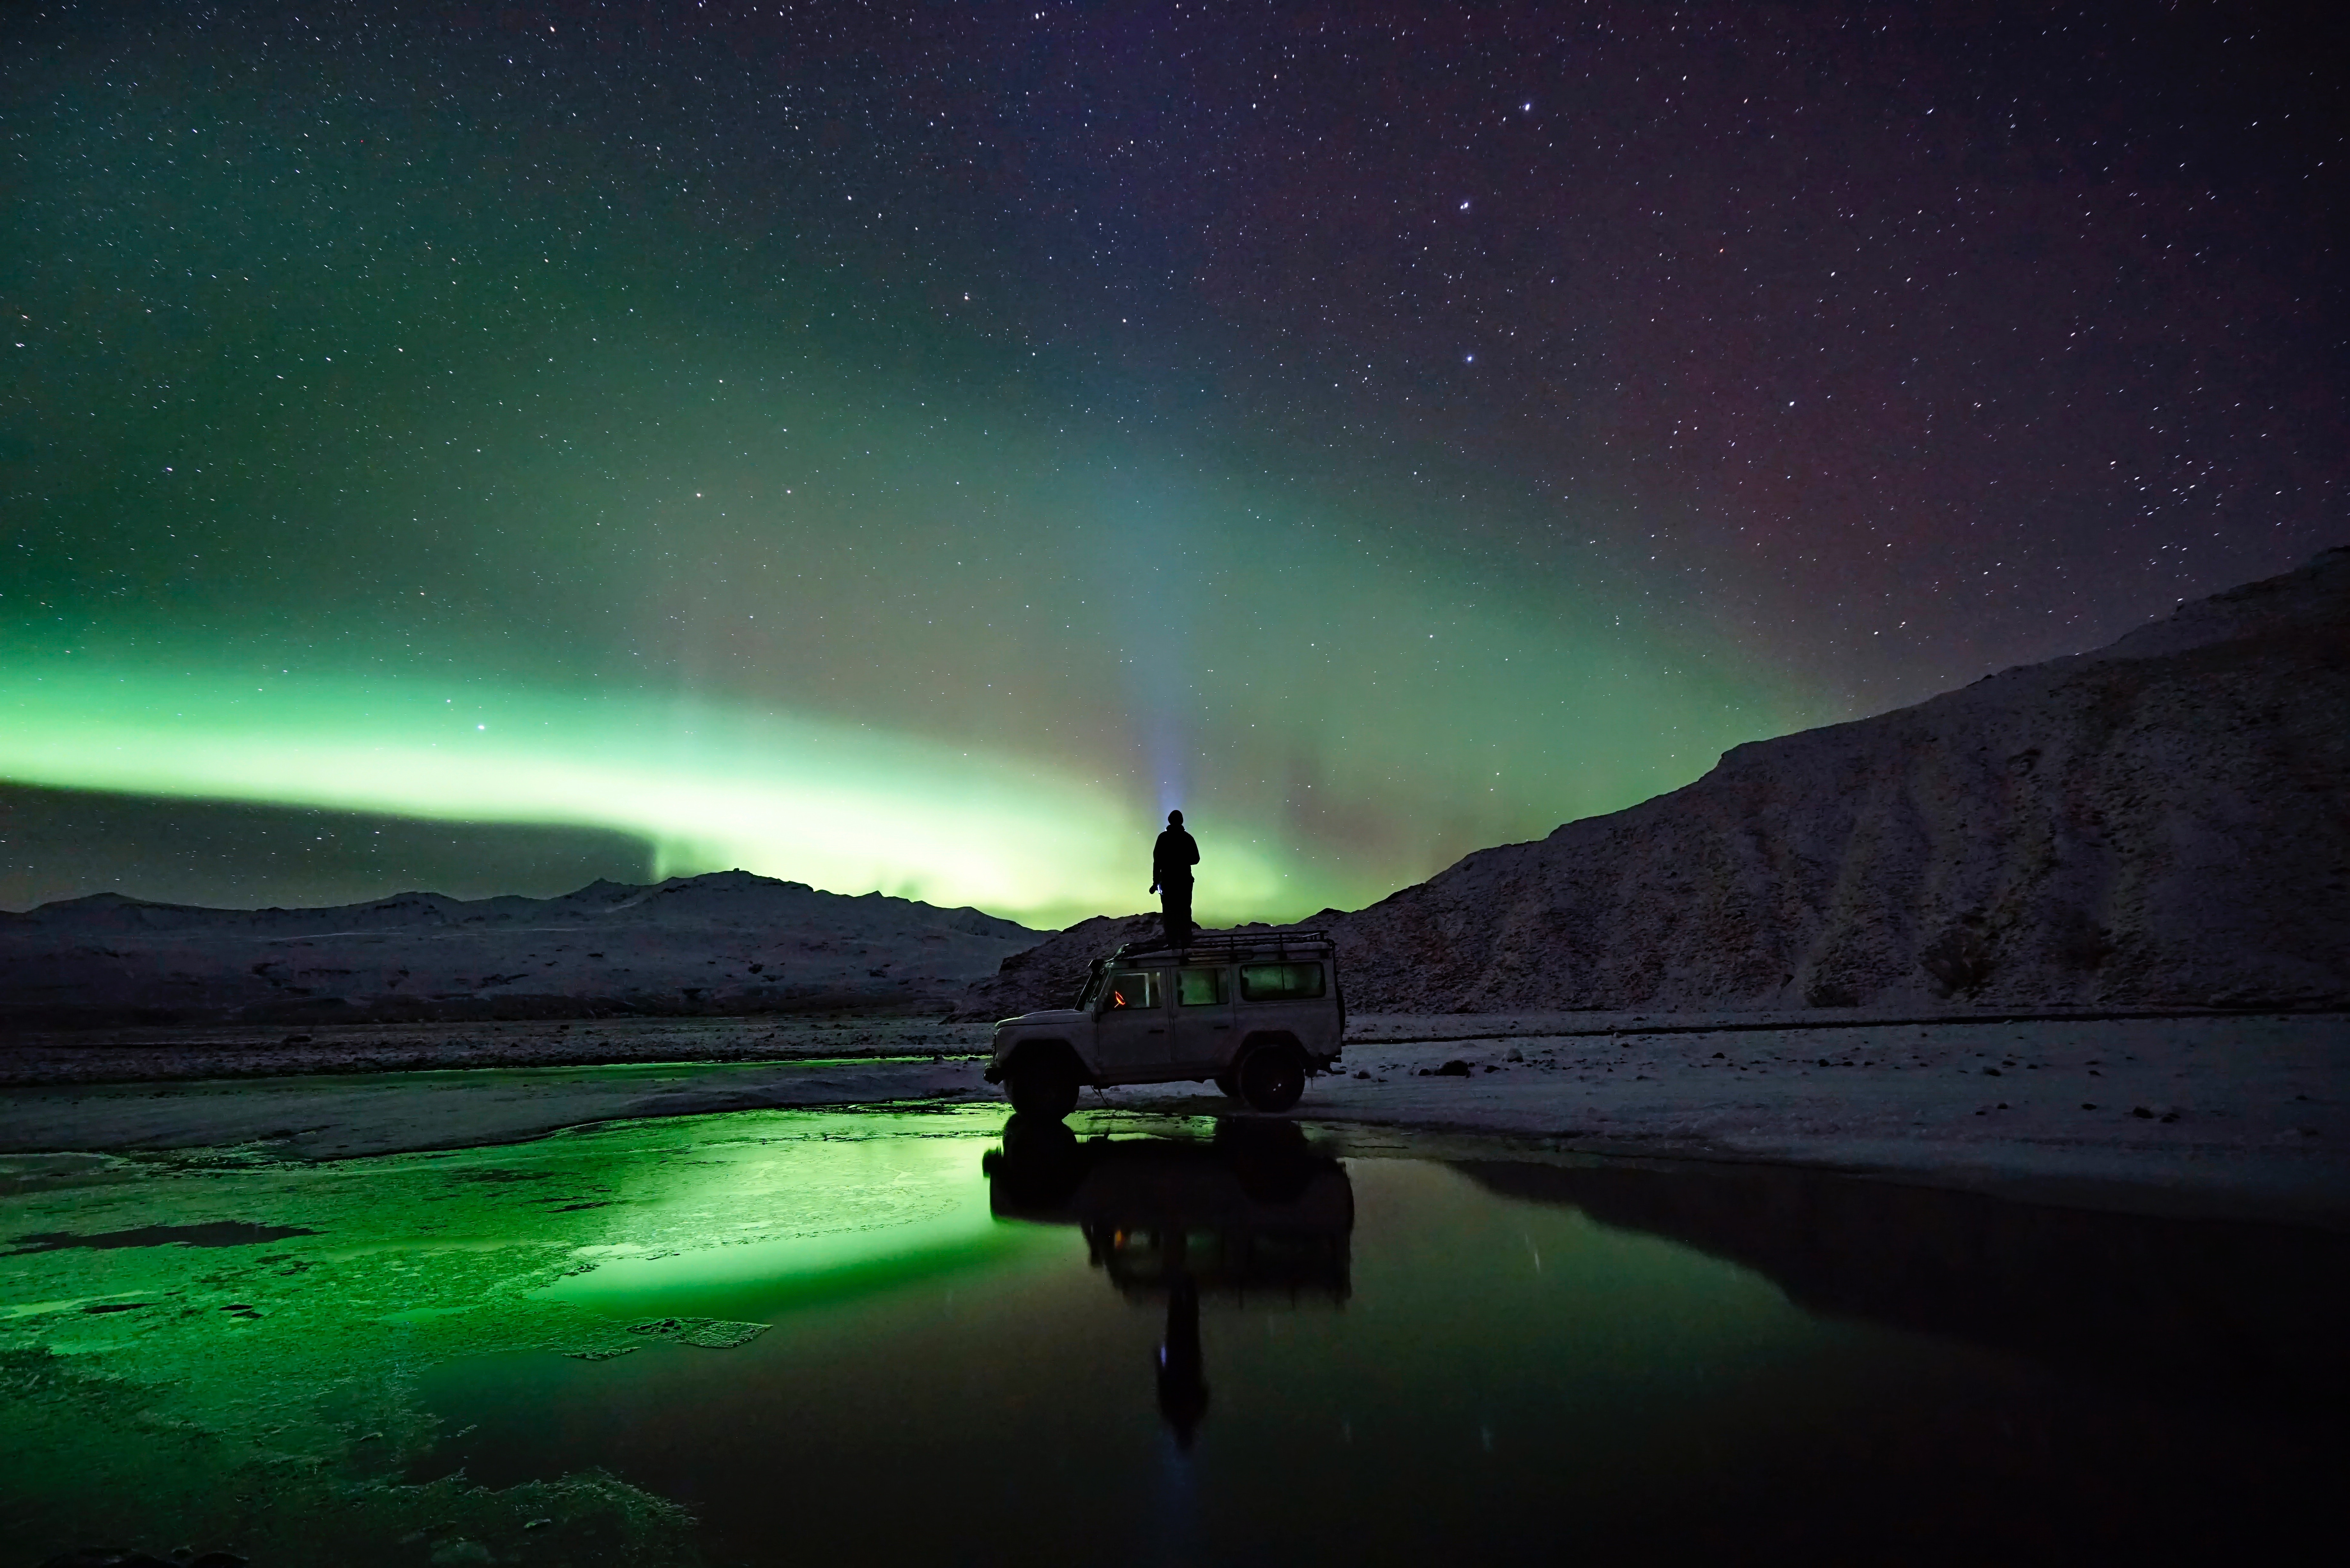 Cómo cazar auroras boreales: precios y actividades